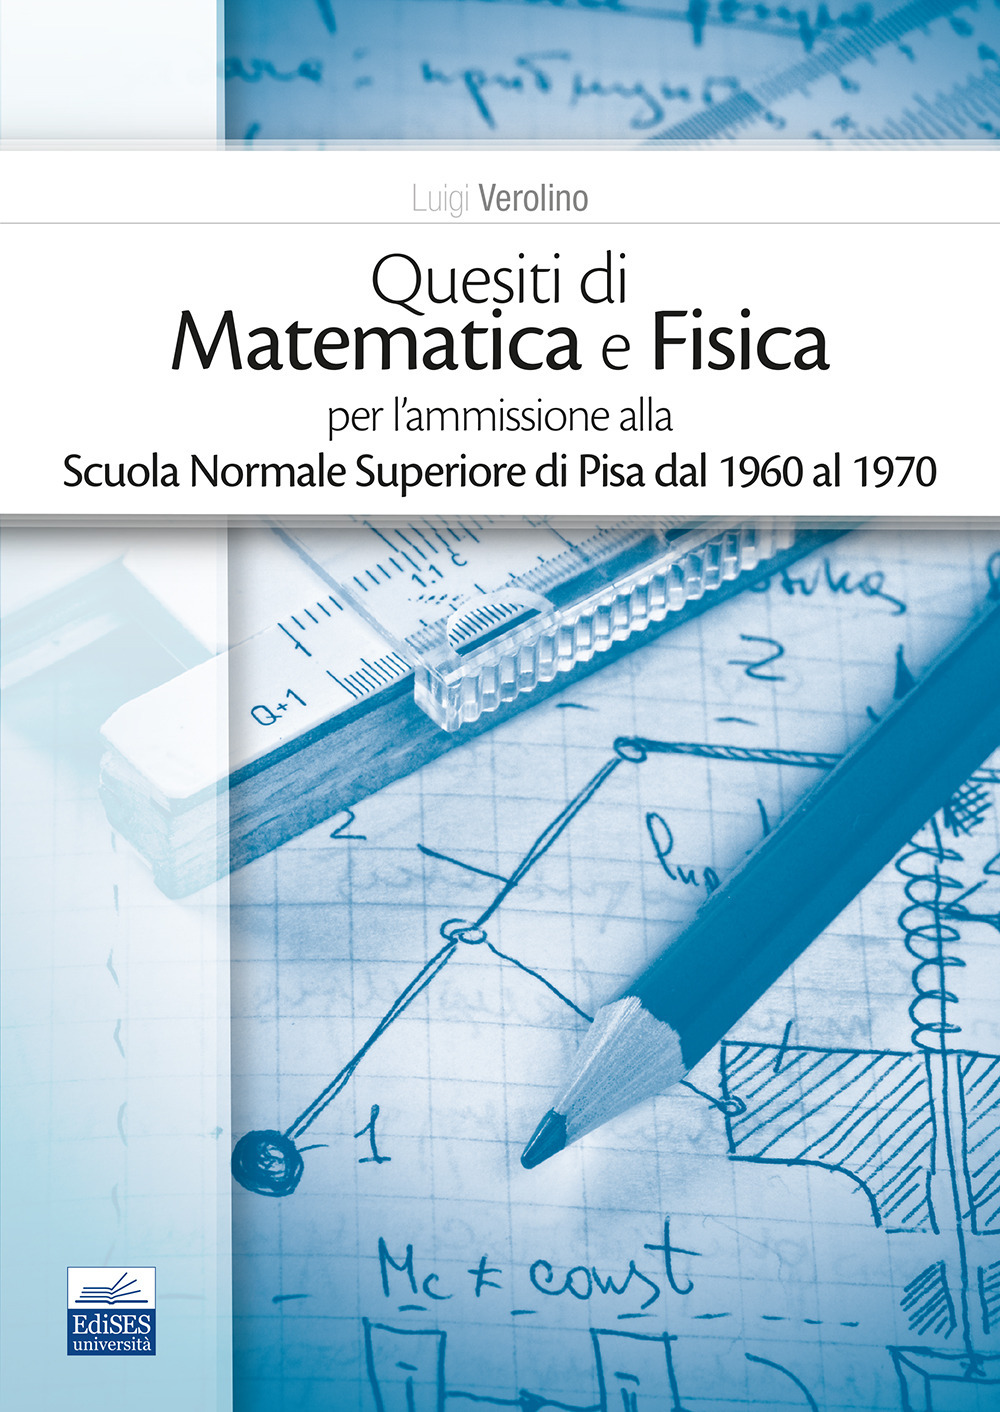 Quesiti di matematica e fisica per l'ammissione alla Scuola Normale Superiore di Pisa dal 1960 al 1970